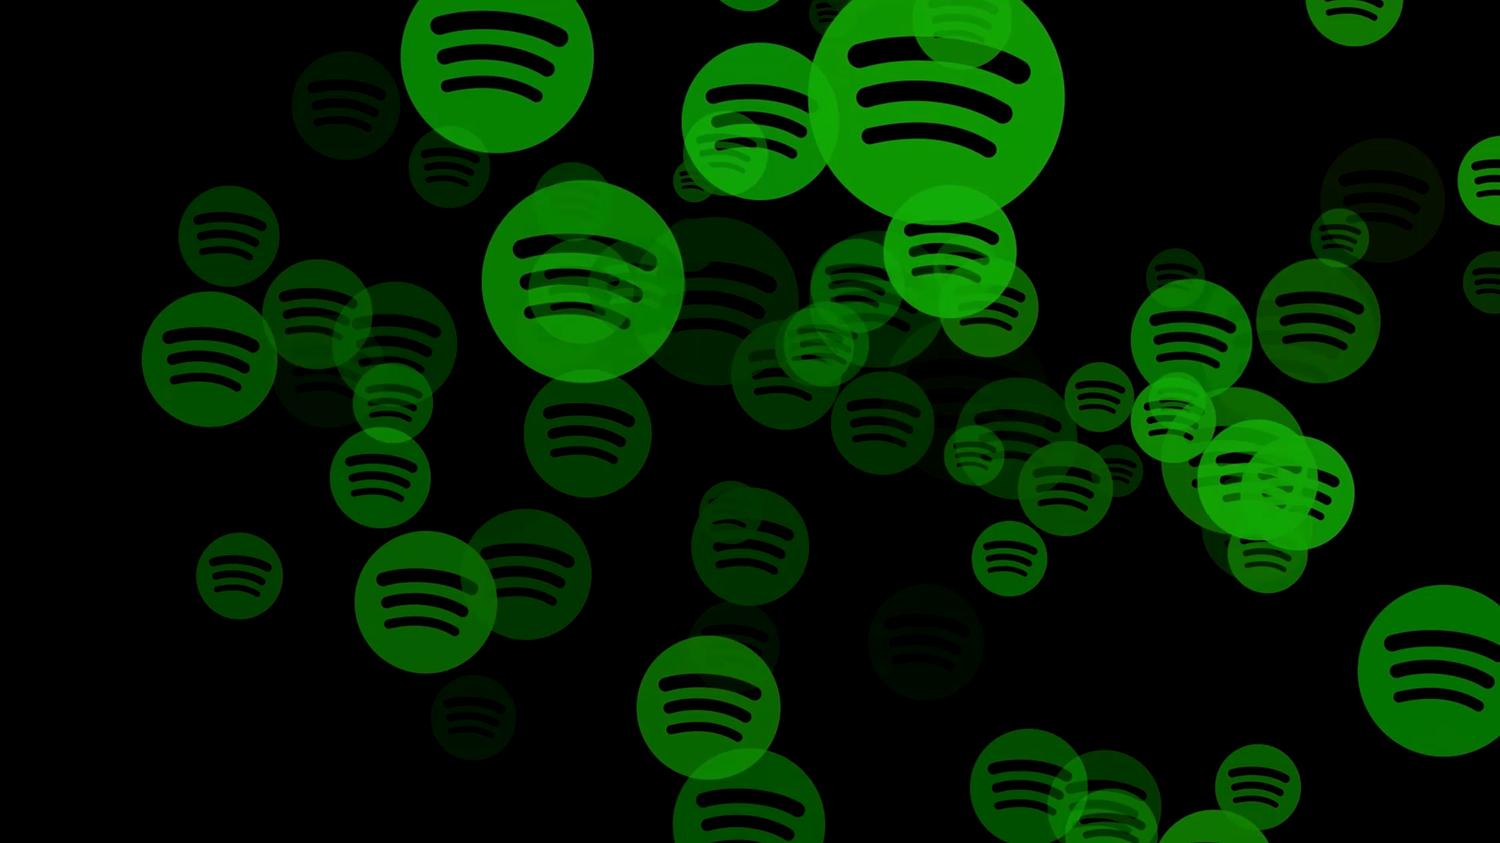 Spotify Aile Uyeligi Icin Adres Istemeye Basladi Teknoloji Haberleri